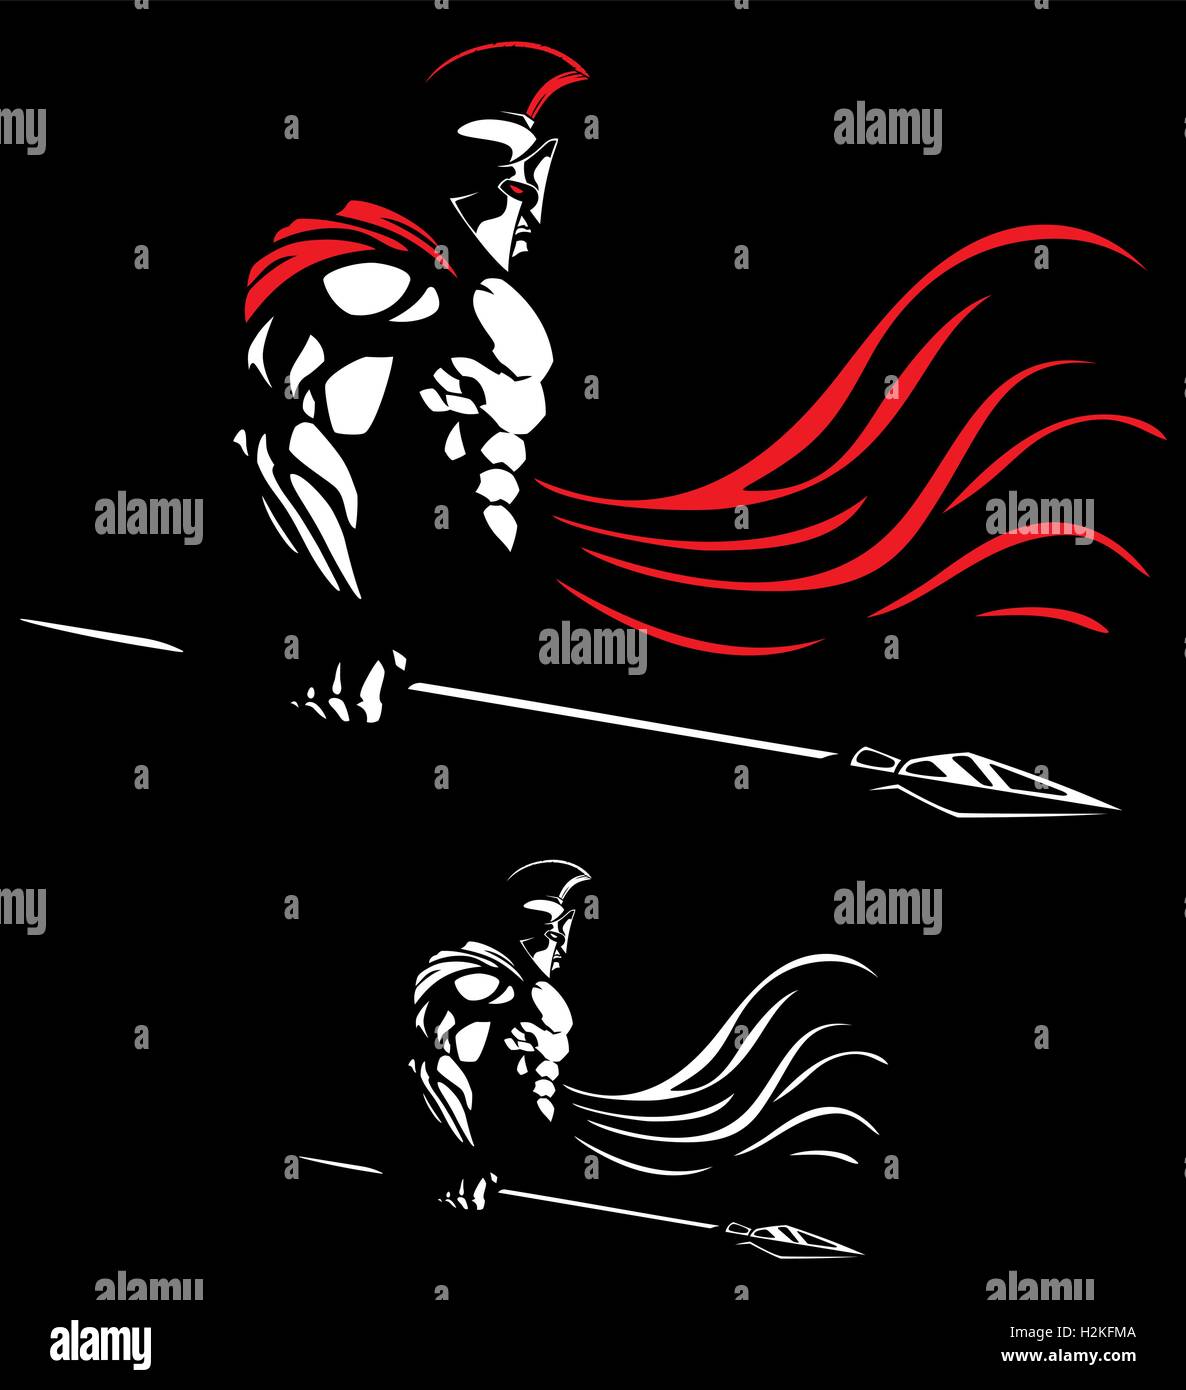 Illustrazione del guerriero spartano su sfondo nero in 2 versioni di colore. Illustrazione Vettoriale